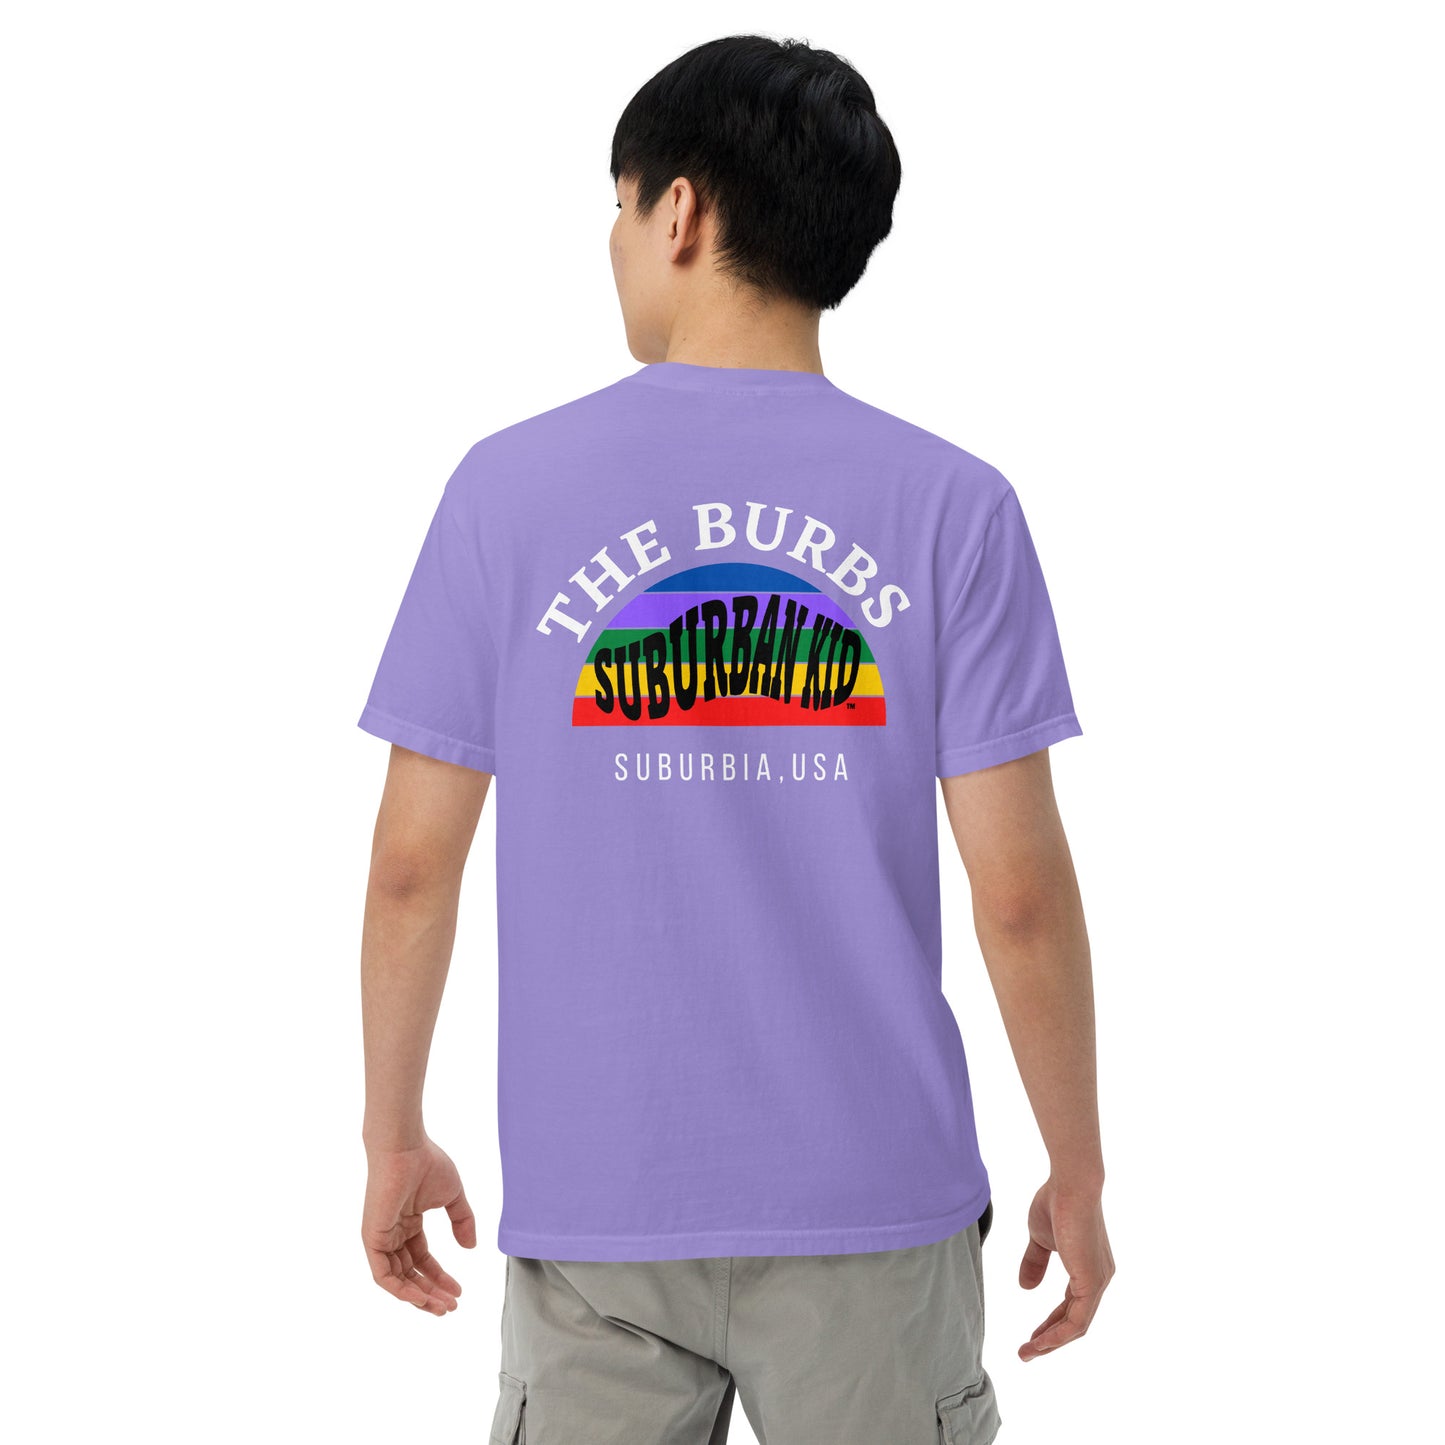 Suburban Kid "The Burbs" T-shirt